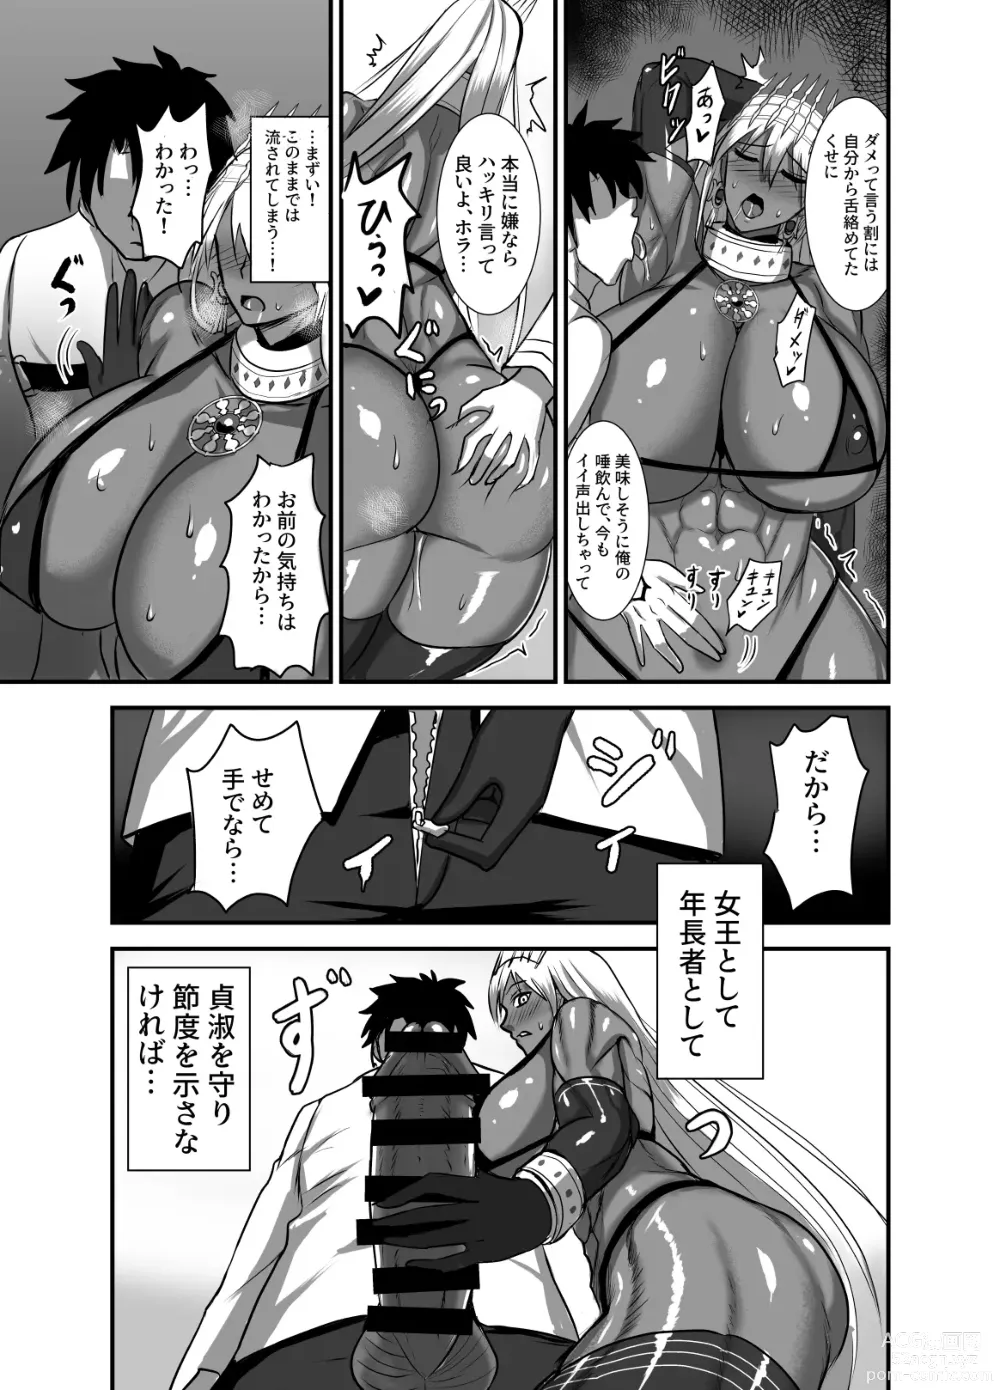 Page 6 of doujinshi Kore wa teishuku ihande wanai!